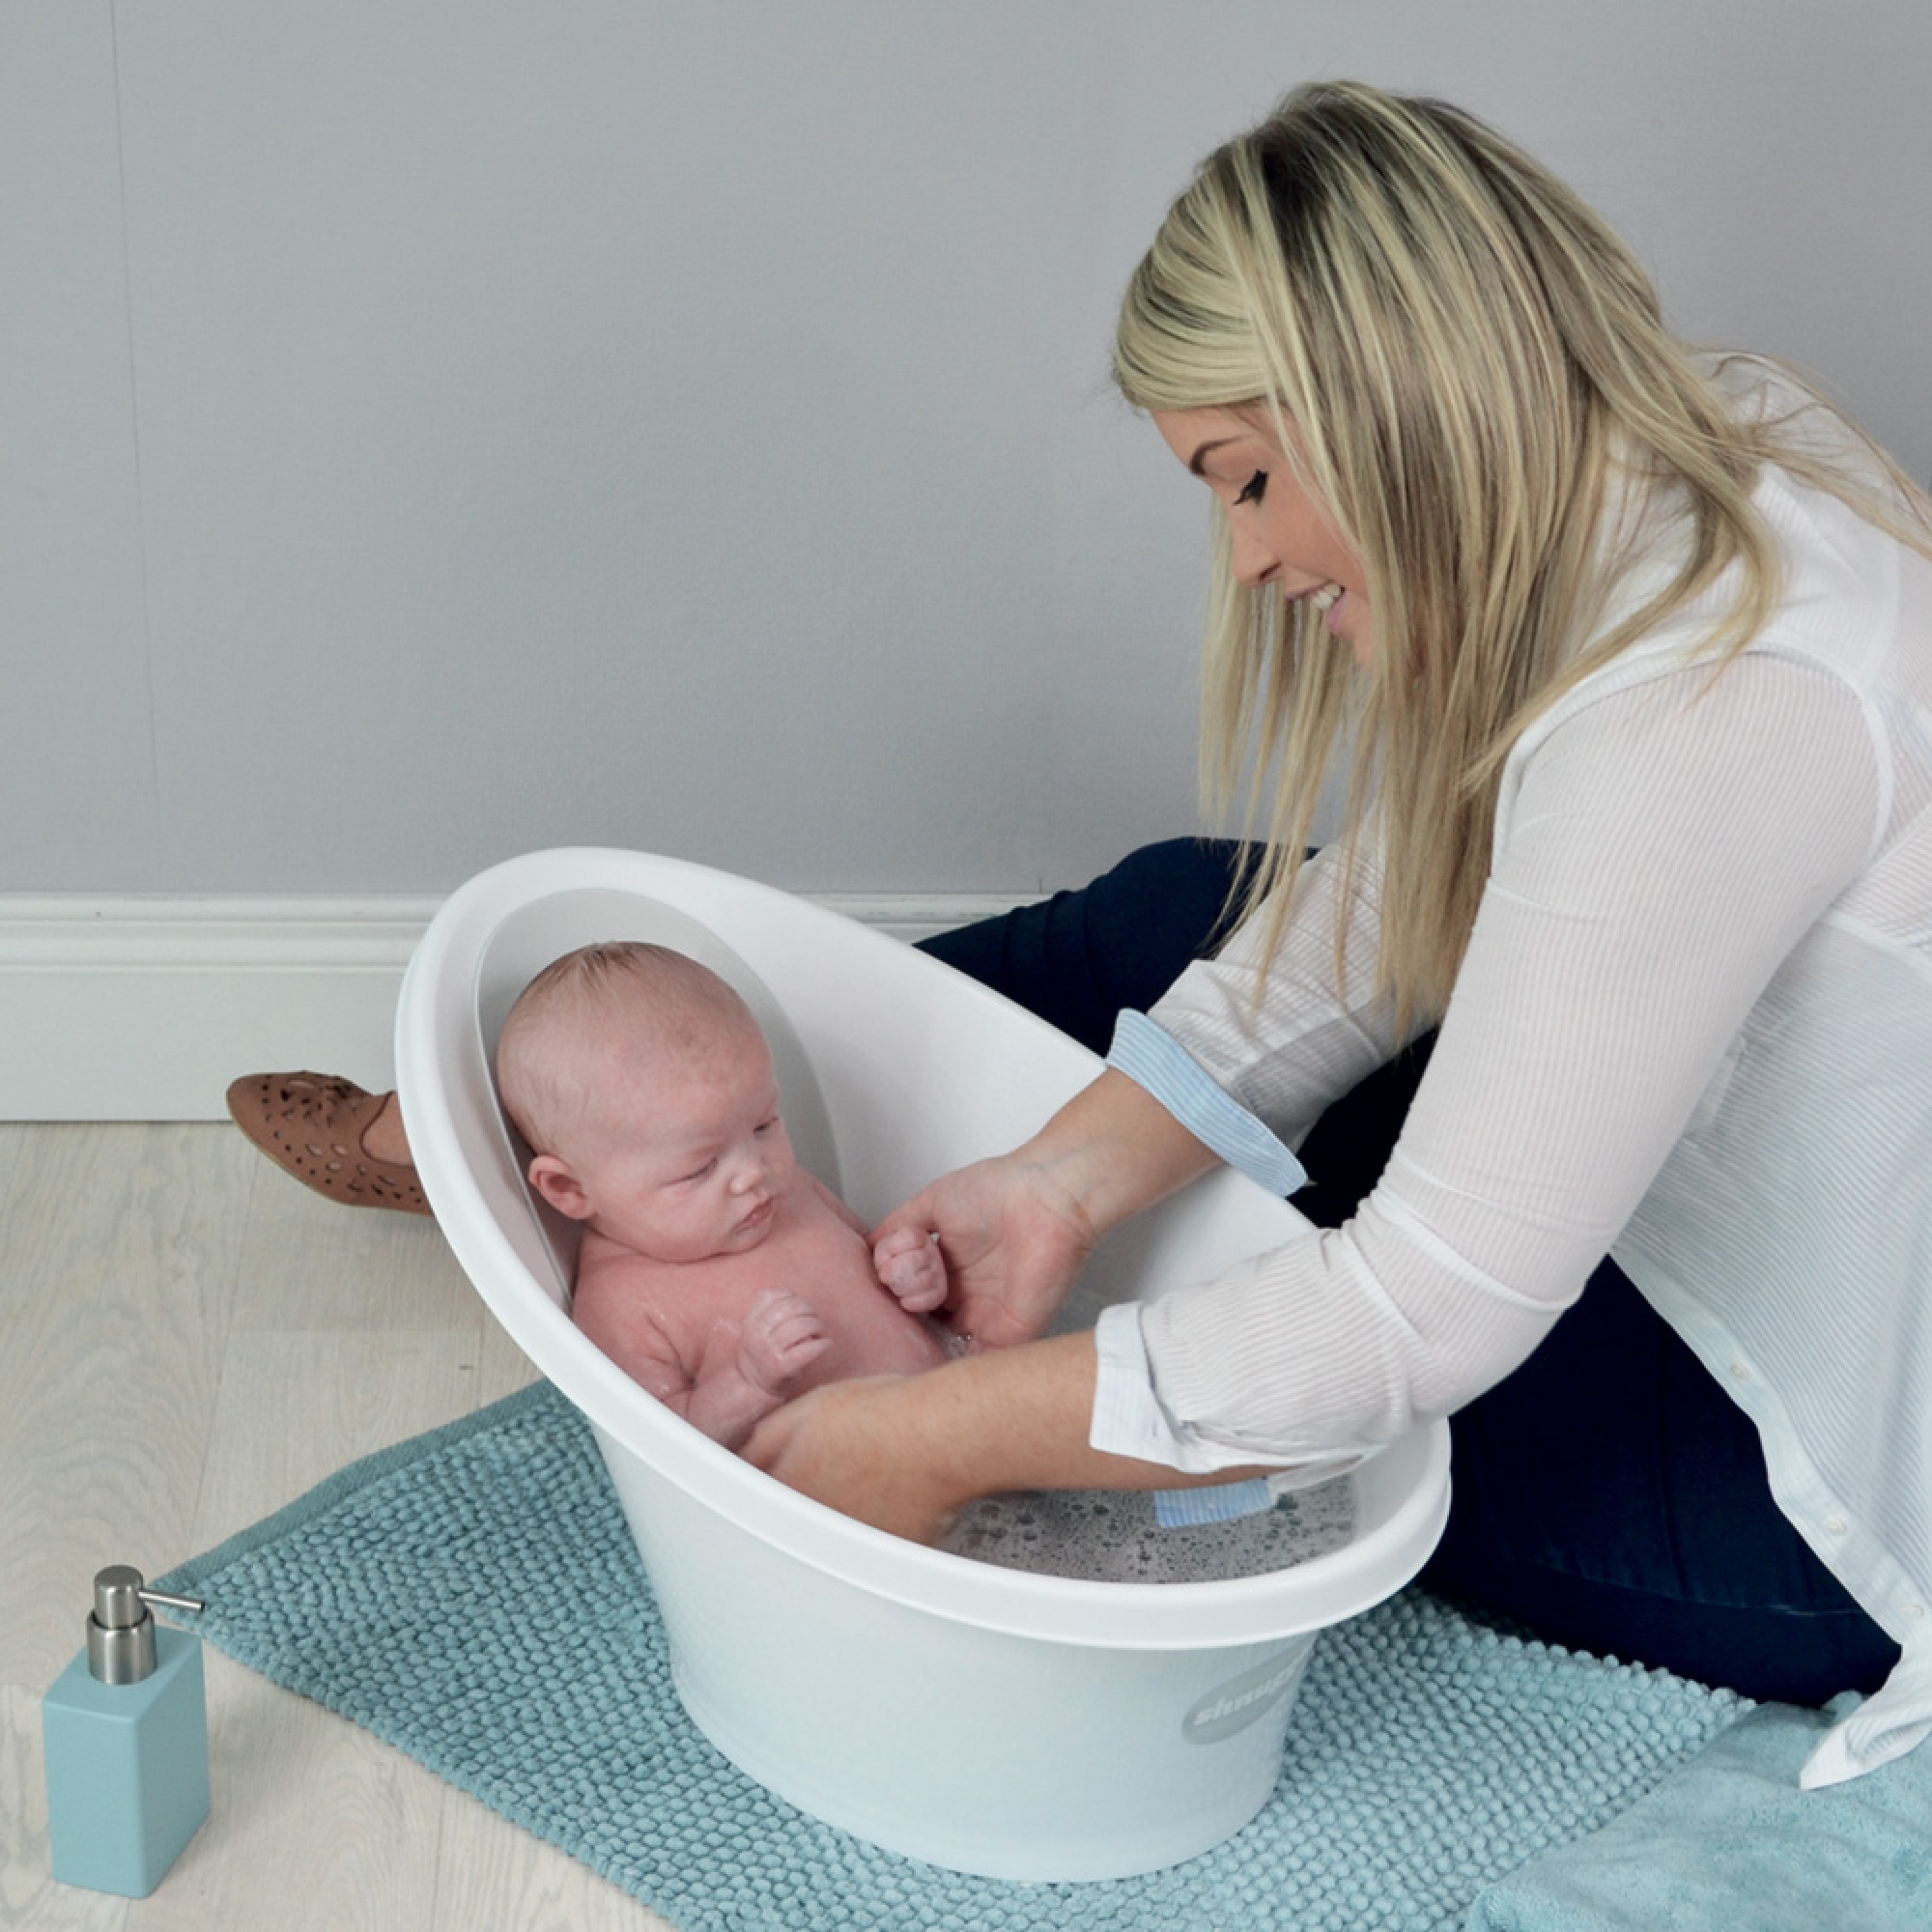 Vente en ligne pour bébé  Support pour baignoire bébé Shnuggle by